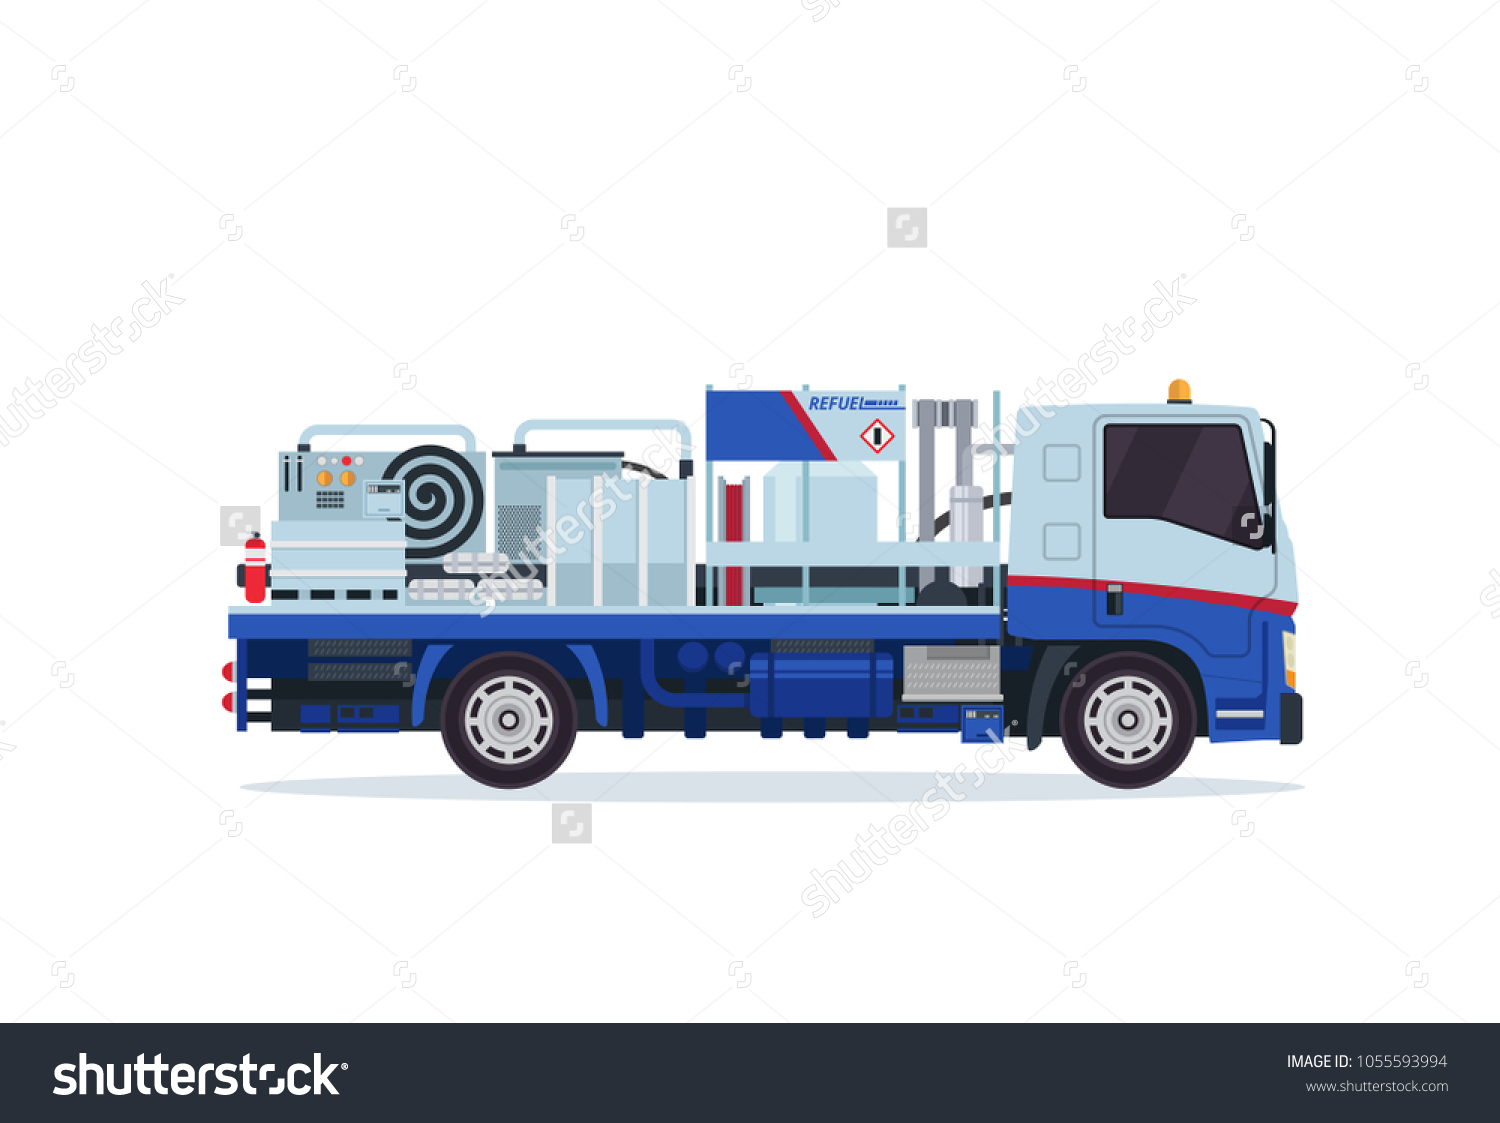 SVG of Modern Airport Underground Tank Truck Refueler Ground Support Vehicle Equipment Illustration svg